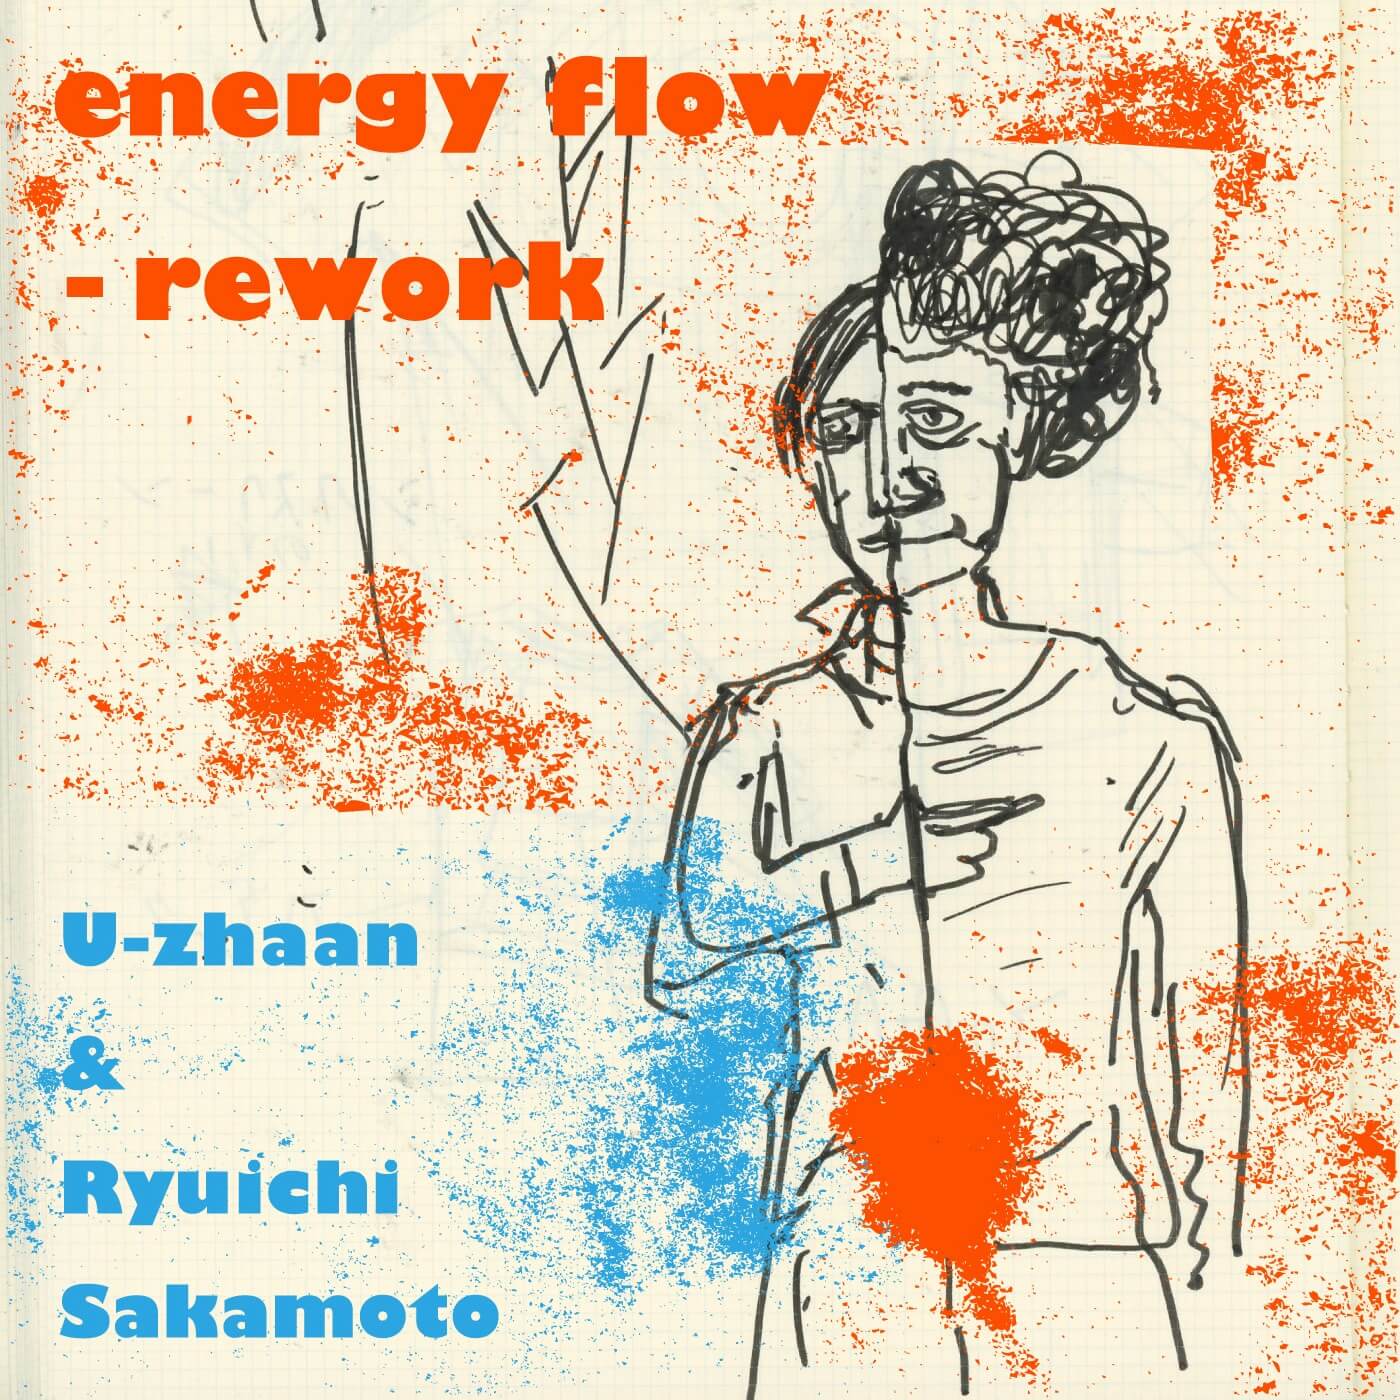 energy-flow-rework_jk-2